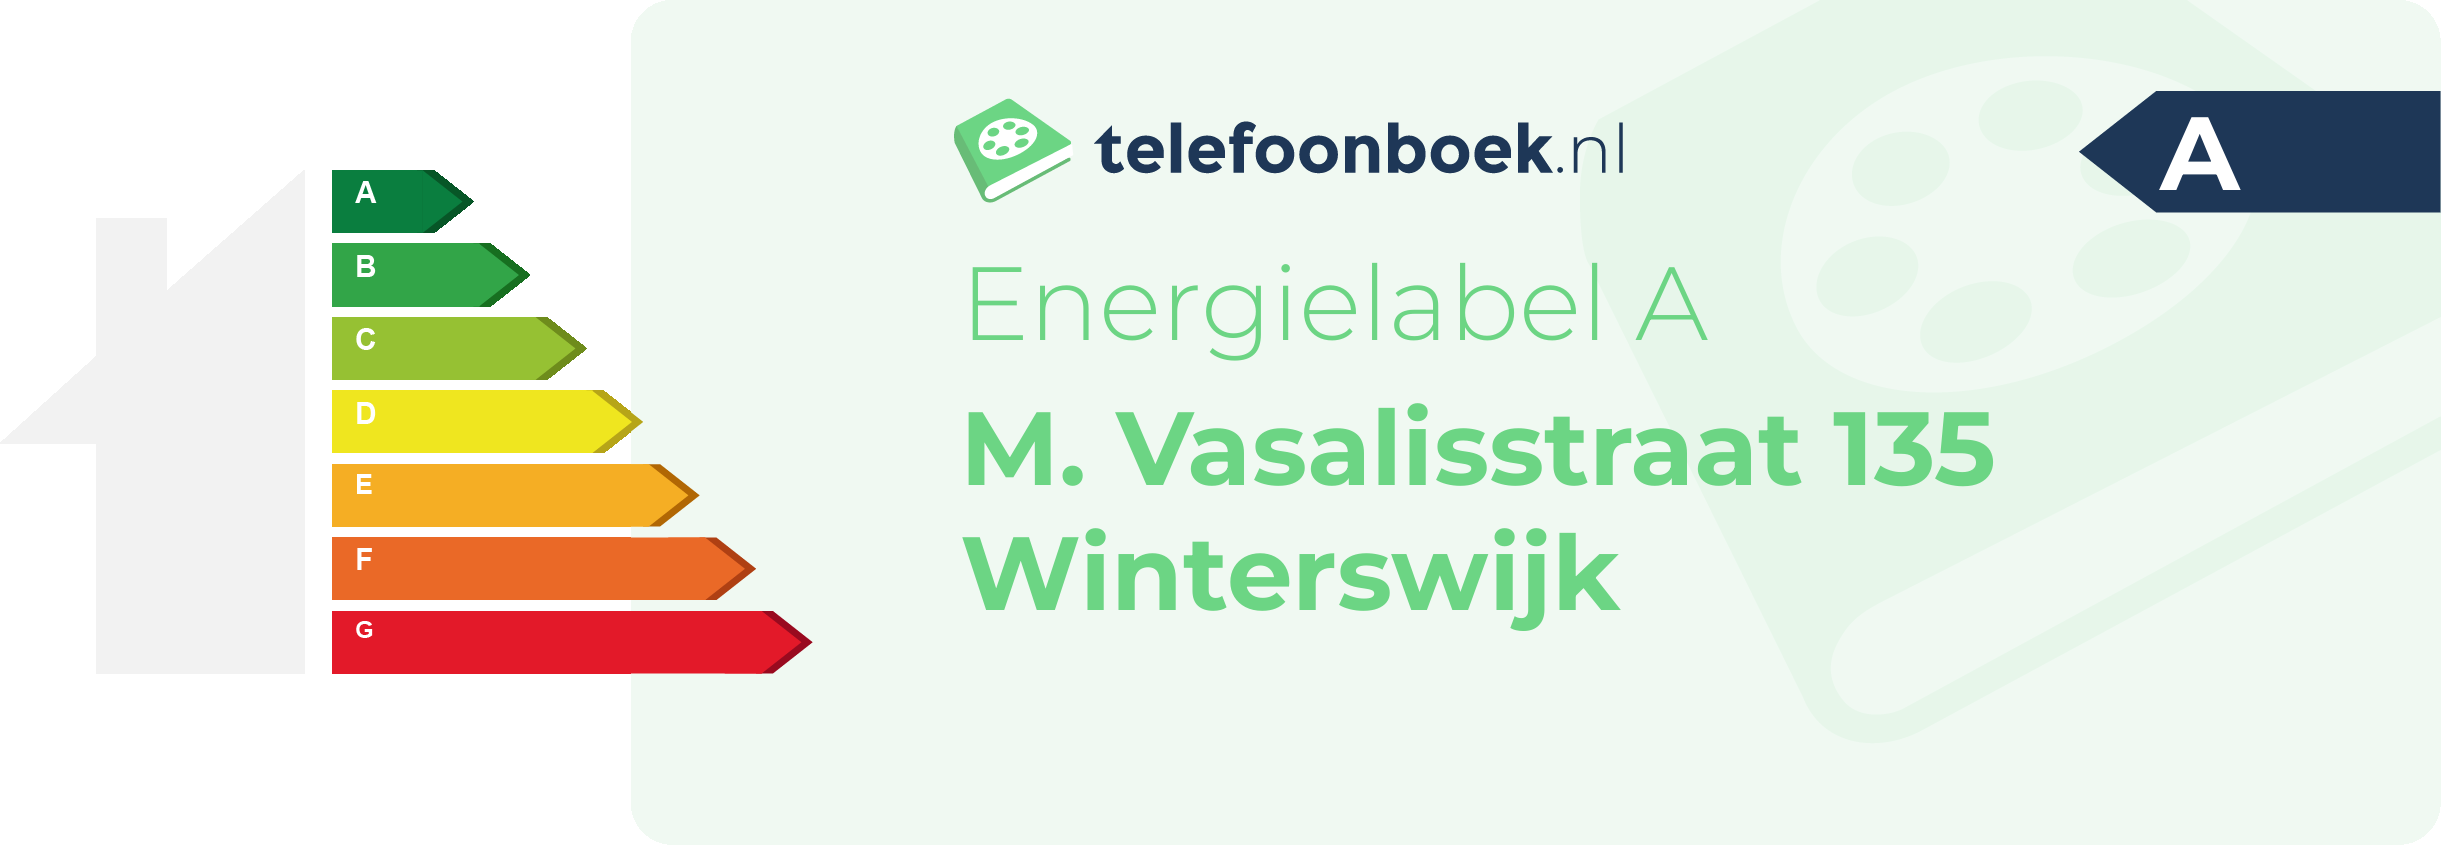 Energielabel M. Vasalisstraat 135 Winterswijk